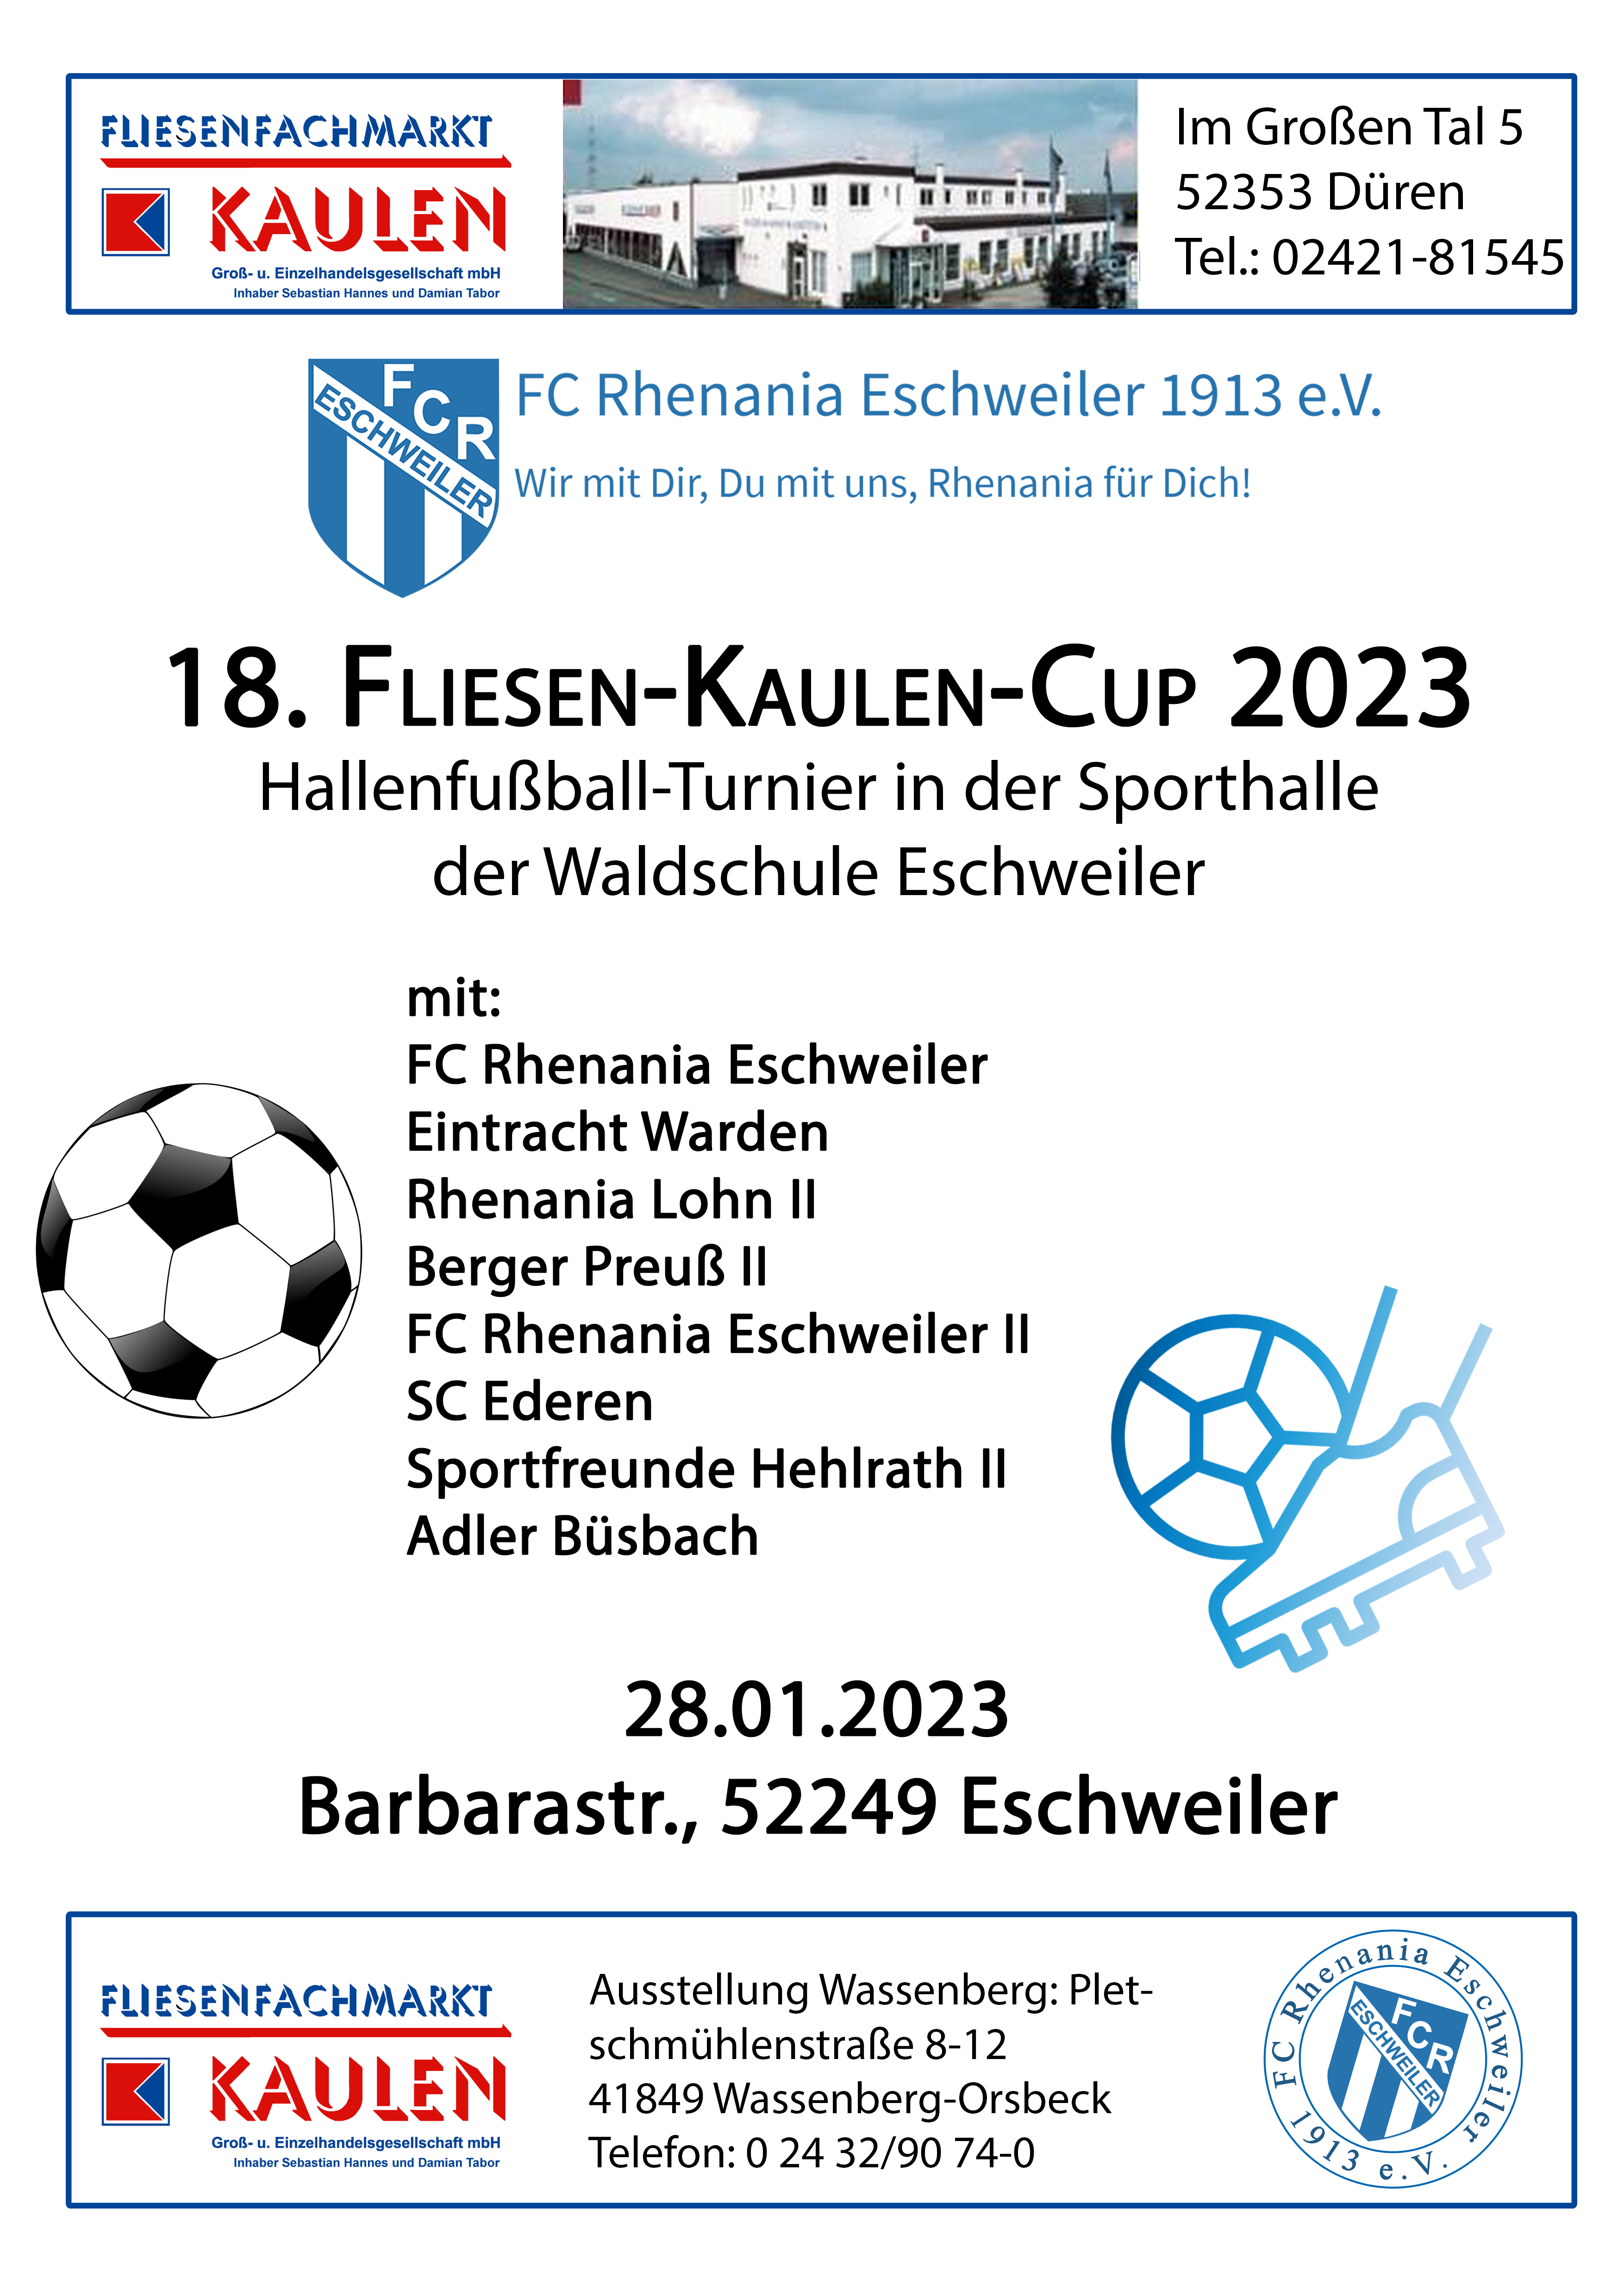 Fliesen-Kaulen-Cup 2023